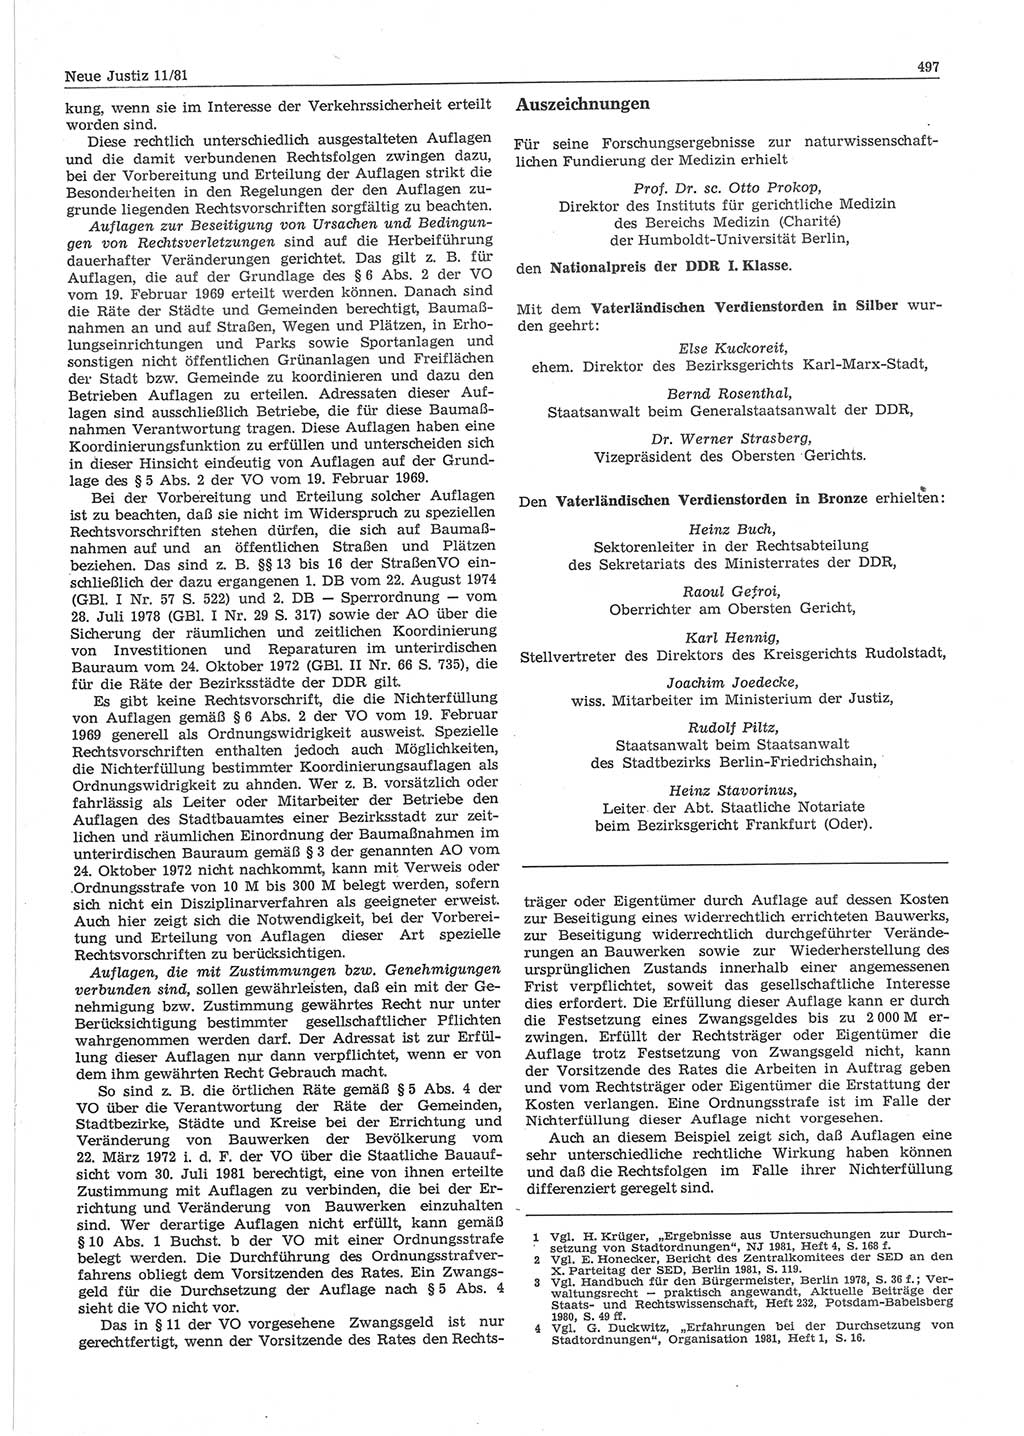 Neue Justiz (NJ), Zeitschrift für sozialistisches Recht und Gesetzlichkeit [Deutsche Demokratische Republik (DDR)], 35. Jahrgang 1981, Seite 497 (NJ DDR 1981, S. 497)